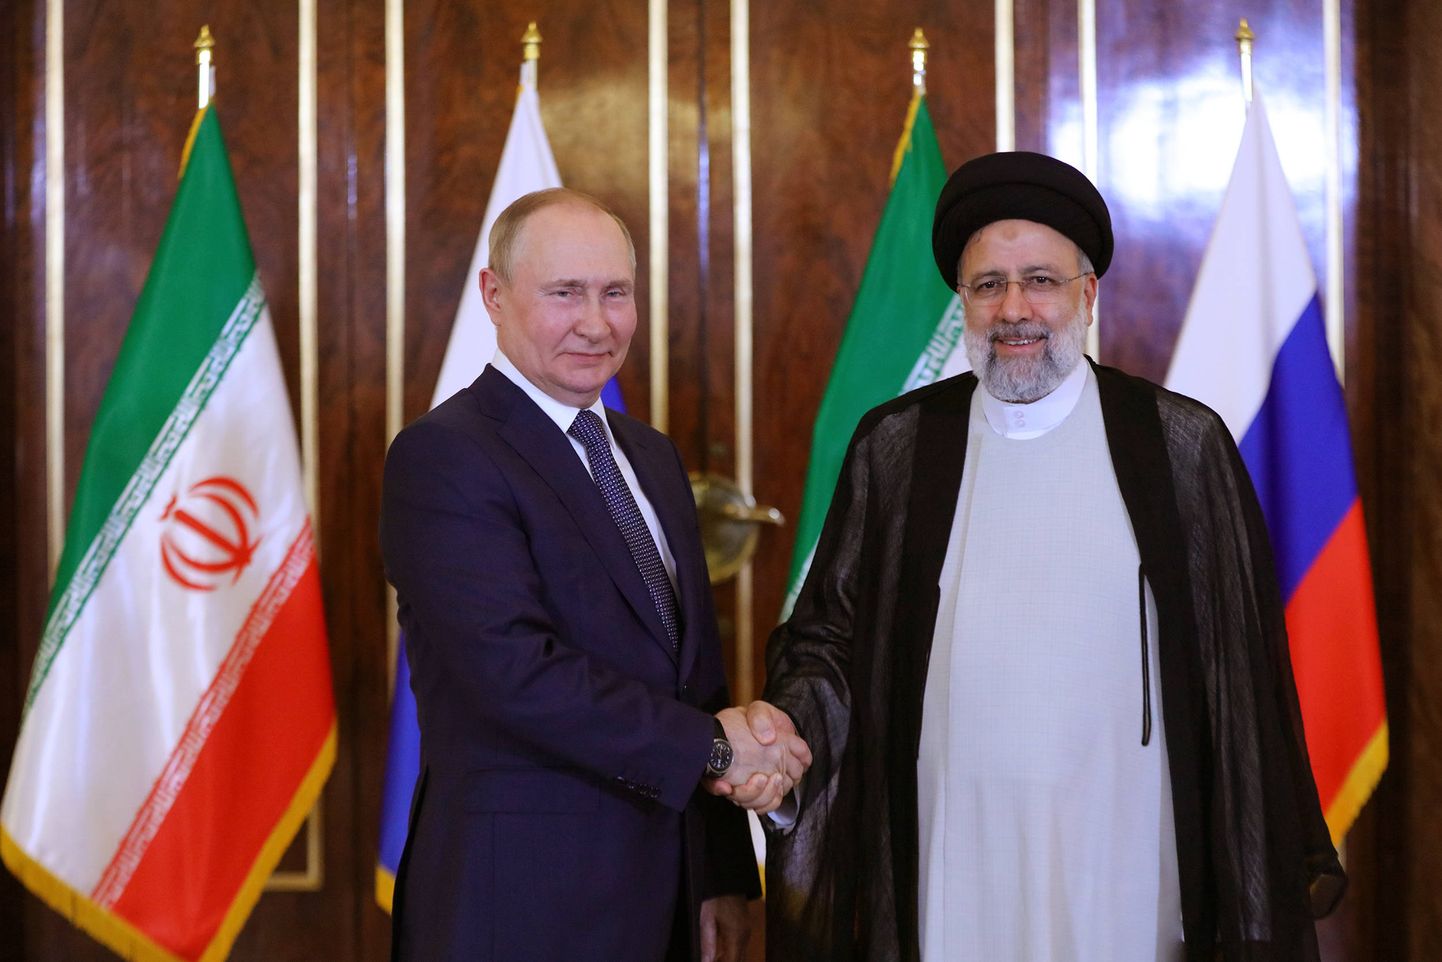 Venemaa president Vladimir Putin surub kätt Iraani presidendi Ebrahim Raisiga nende kohtumisel Teheranis.